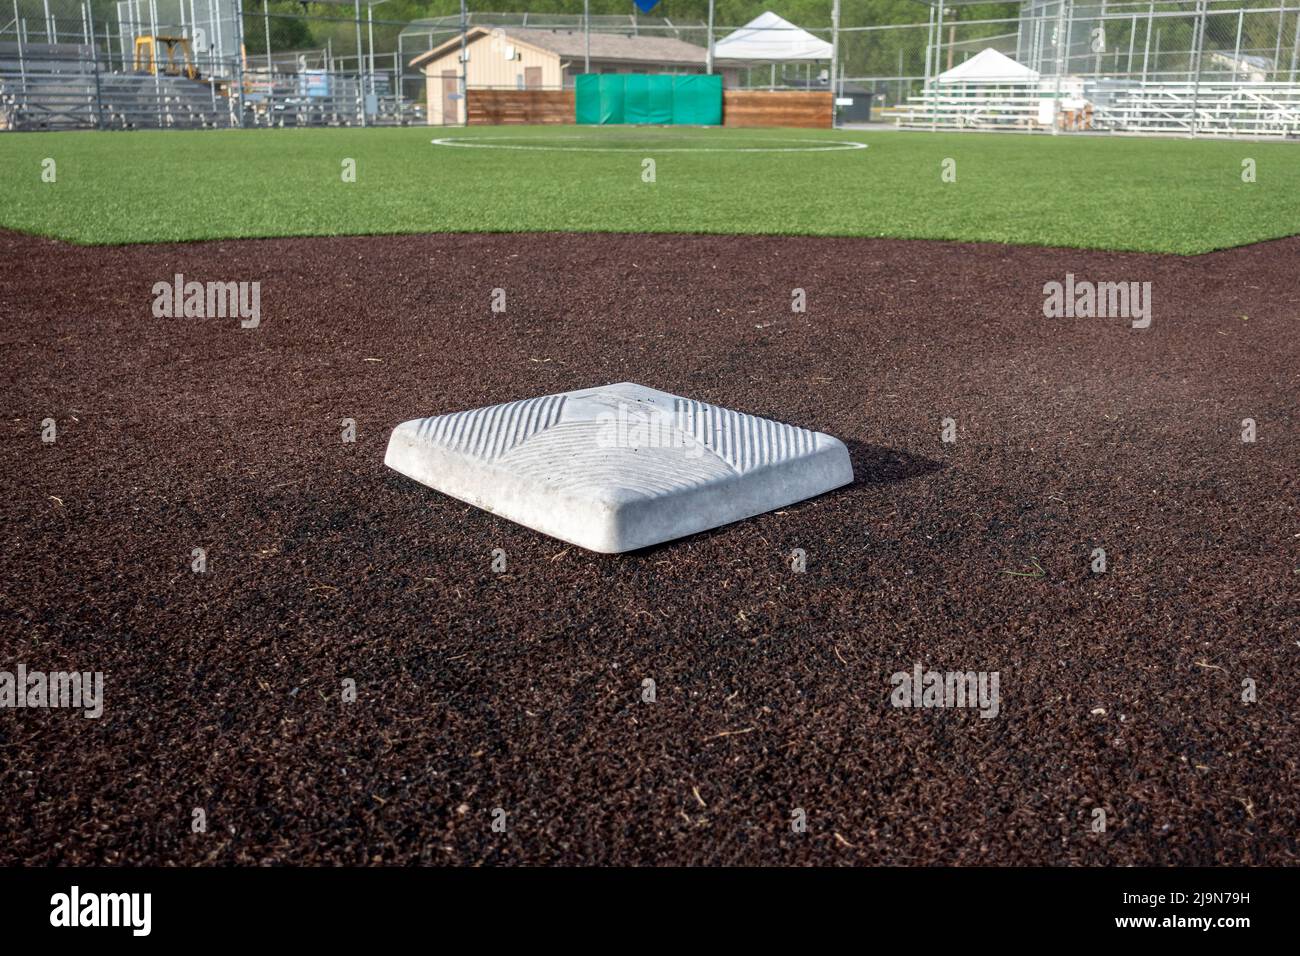 Abgewinkelte Ansicht eines Baseballfeldes an einem hellen, sonnigen Tag Stockfoto